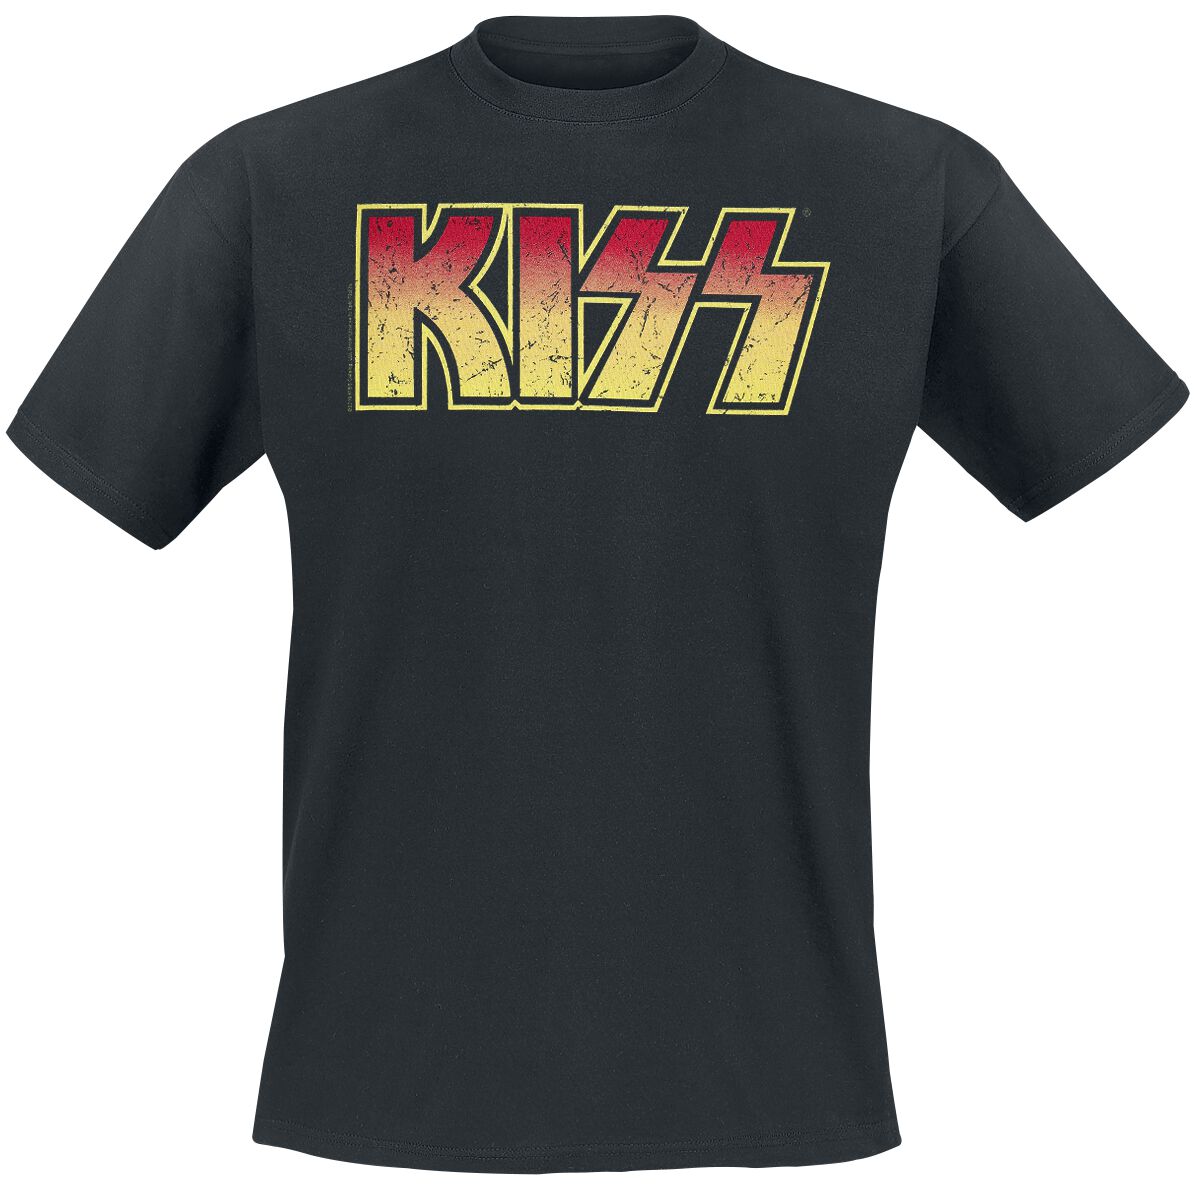 Kiss T-Shirt - Distressed Logo - XL bis 5XL - für Männer - Größe 3XL - schwarz  - Lizenziertes Merchandise!